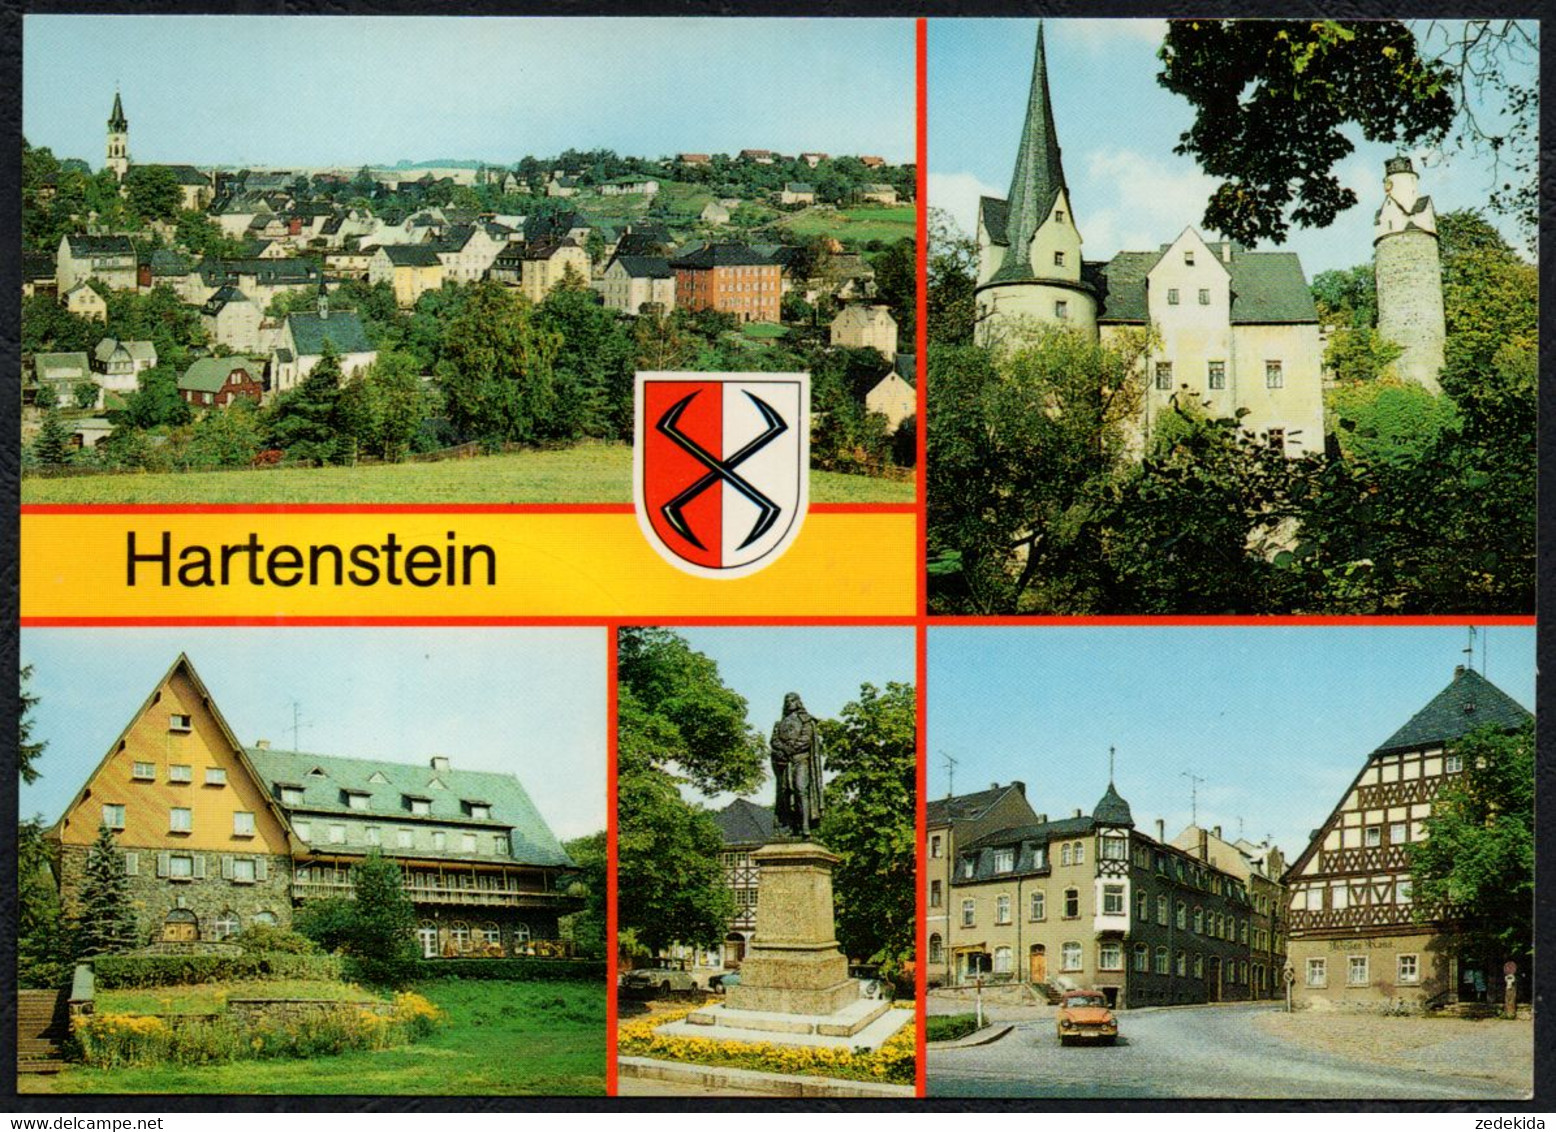 F5703 - TOP Hartenstein - Verlag Bild Und Heimat Reichenbach - Hartenstein